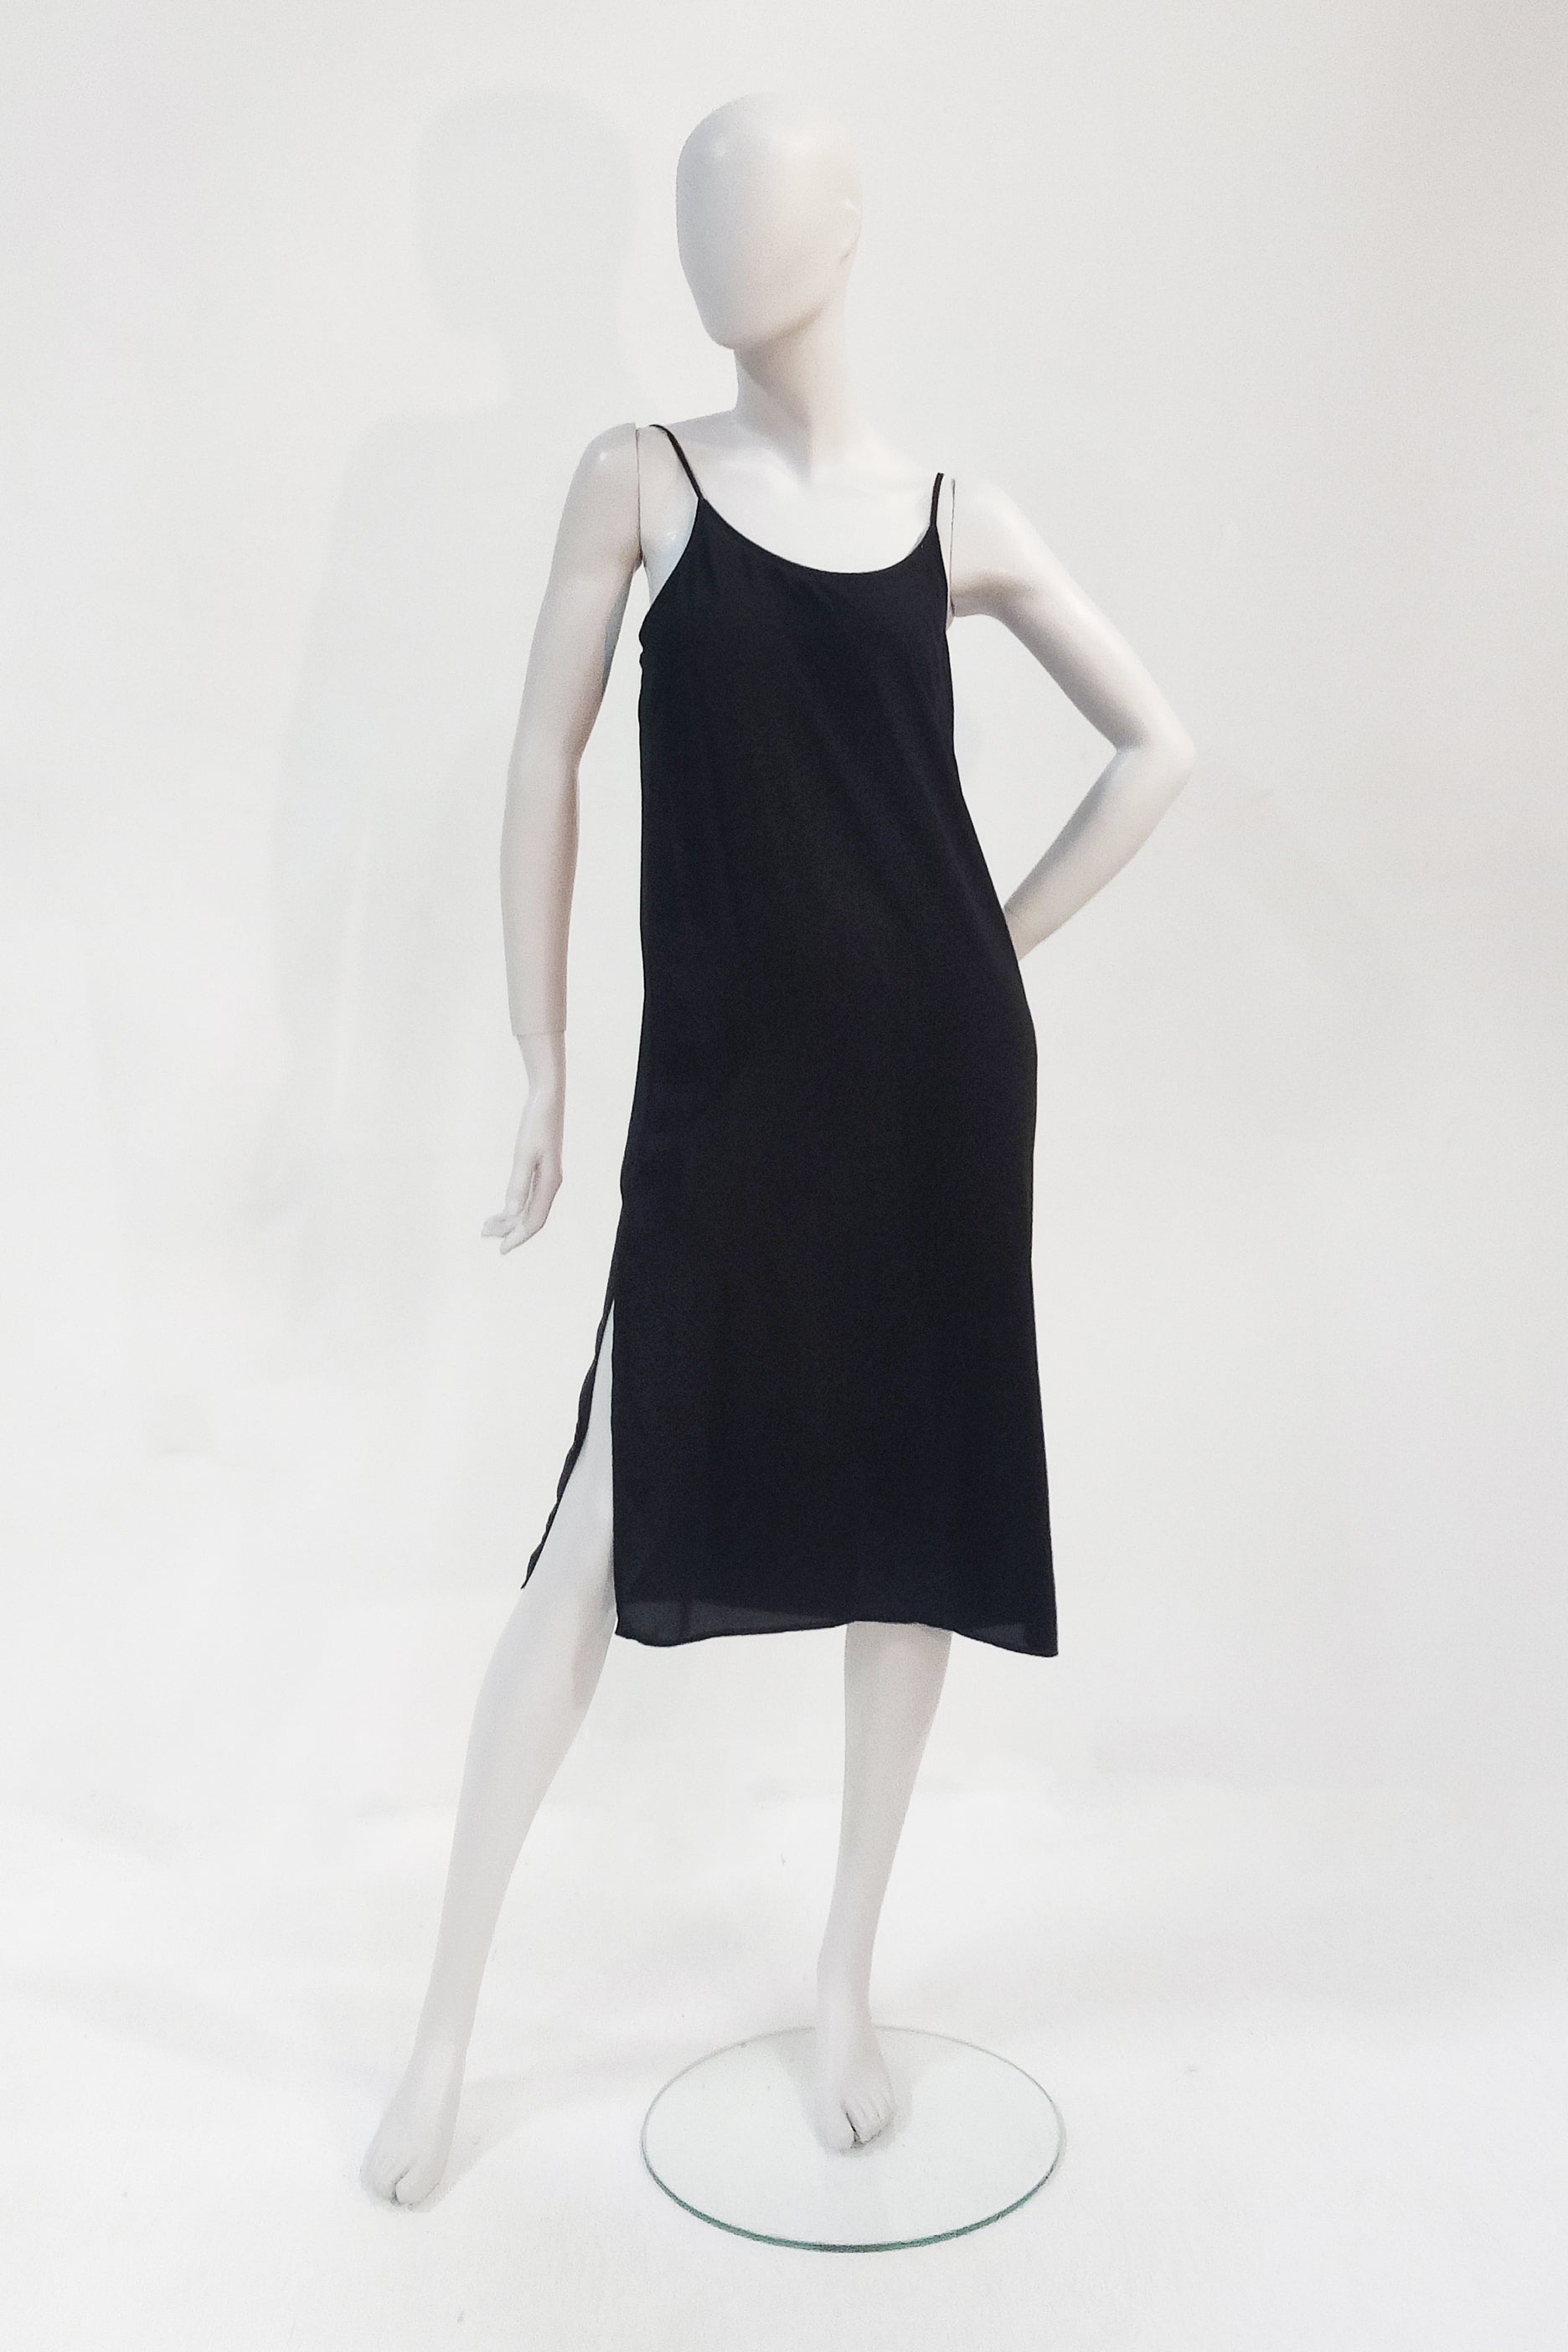 Black Midi Slip Dress (Eu38)